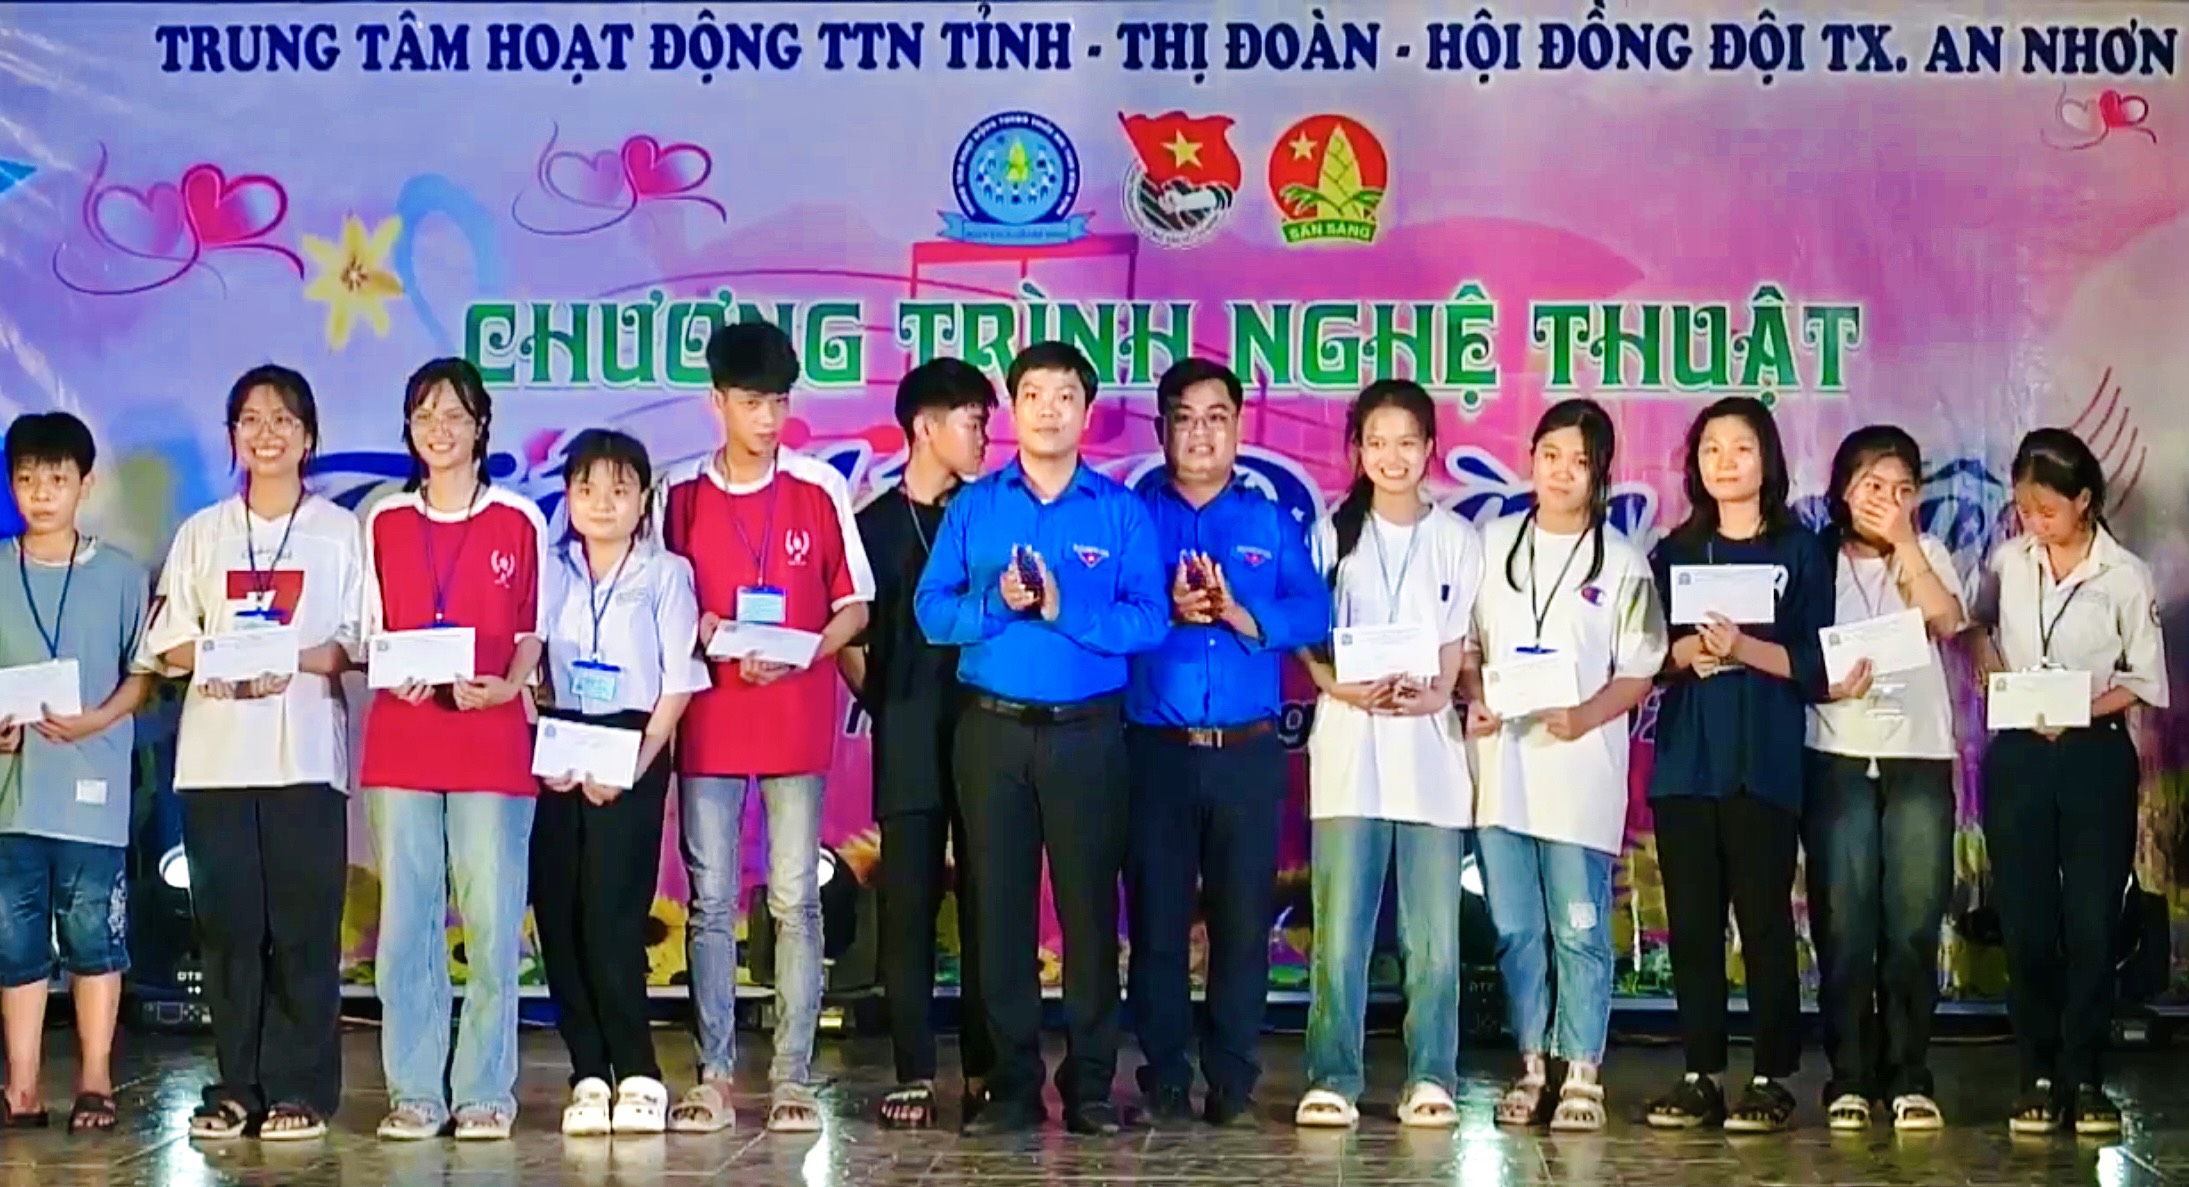 Tổ chức Hội trại và chương trình nghệ thuật “Tiến lên Đoàn viên” cho 300 em học sinh khối THCS, THPT, đoàn viên thanh niên trên địa bàn Thị xã An Nhơn.